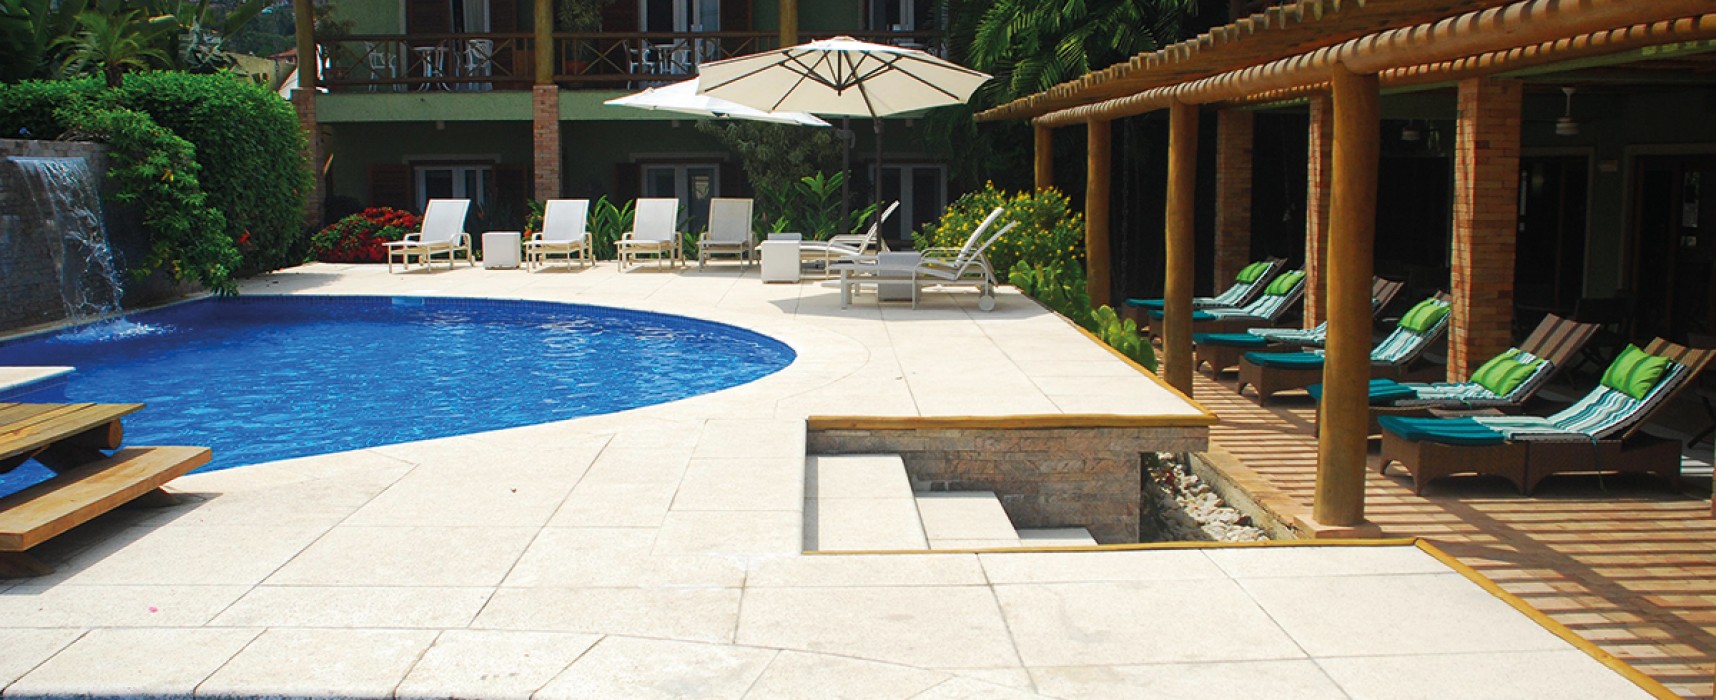 Ilha Plaza Hotel: seu Verão em Ilhabela com conforto e diversão garantida